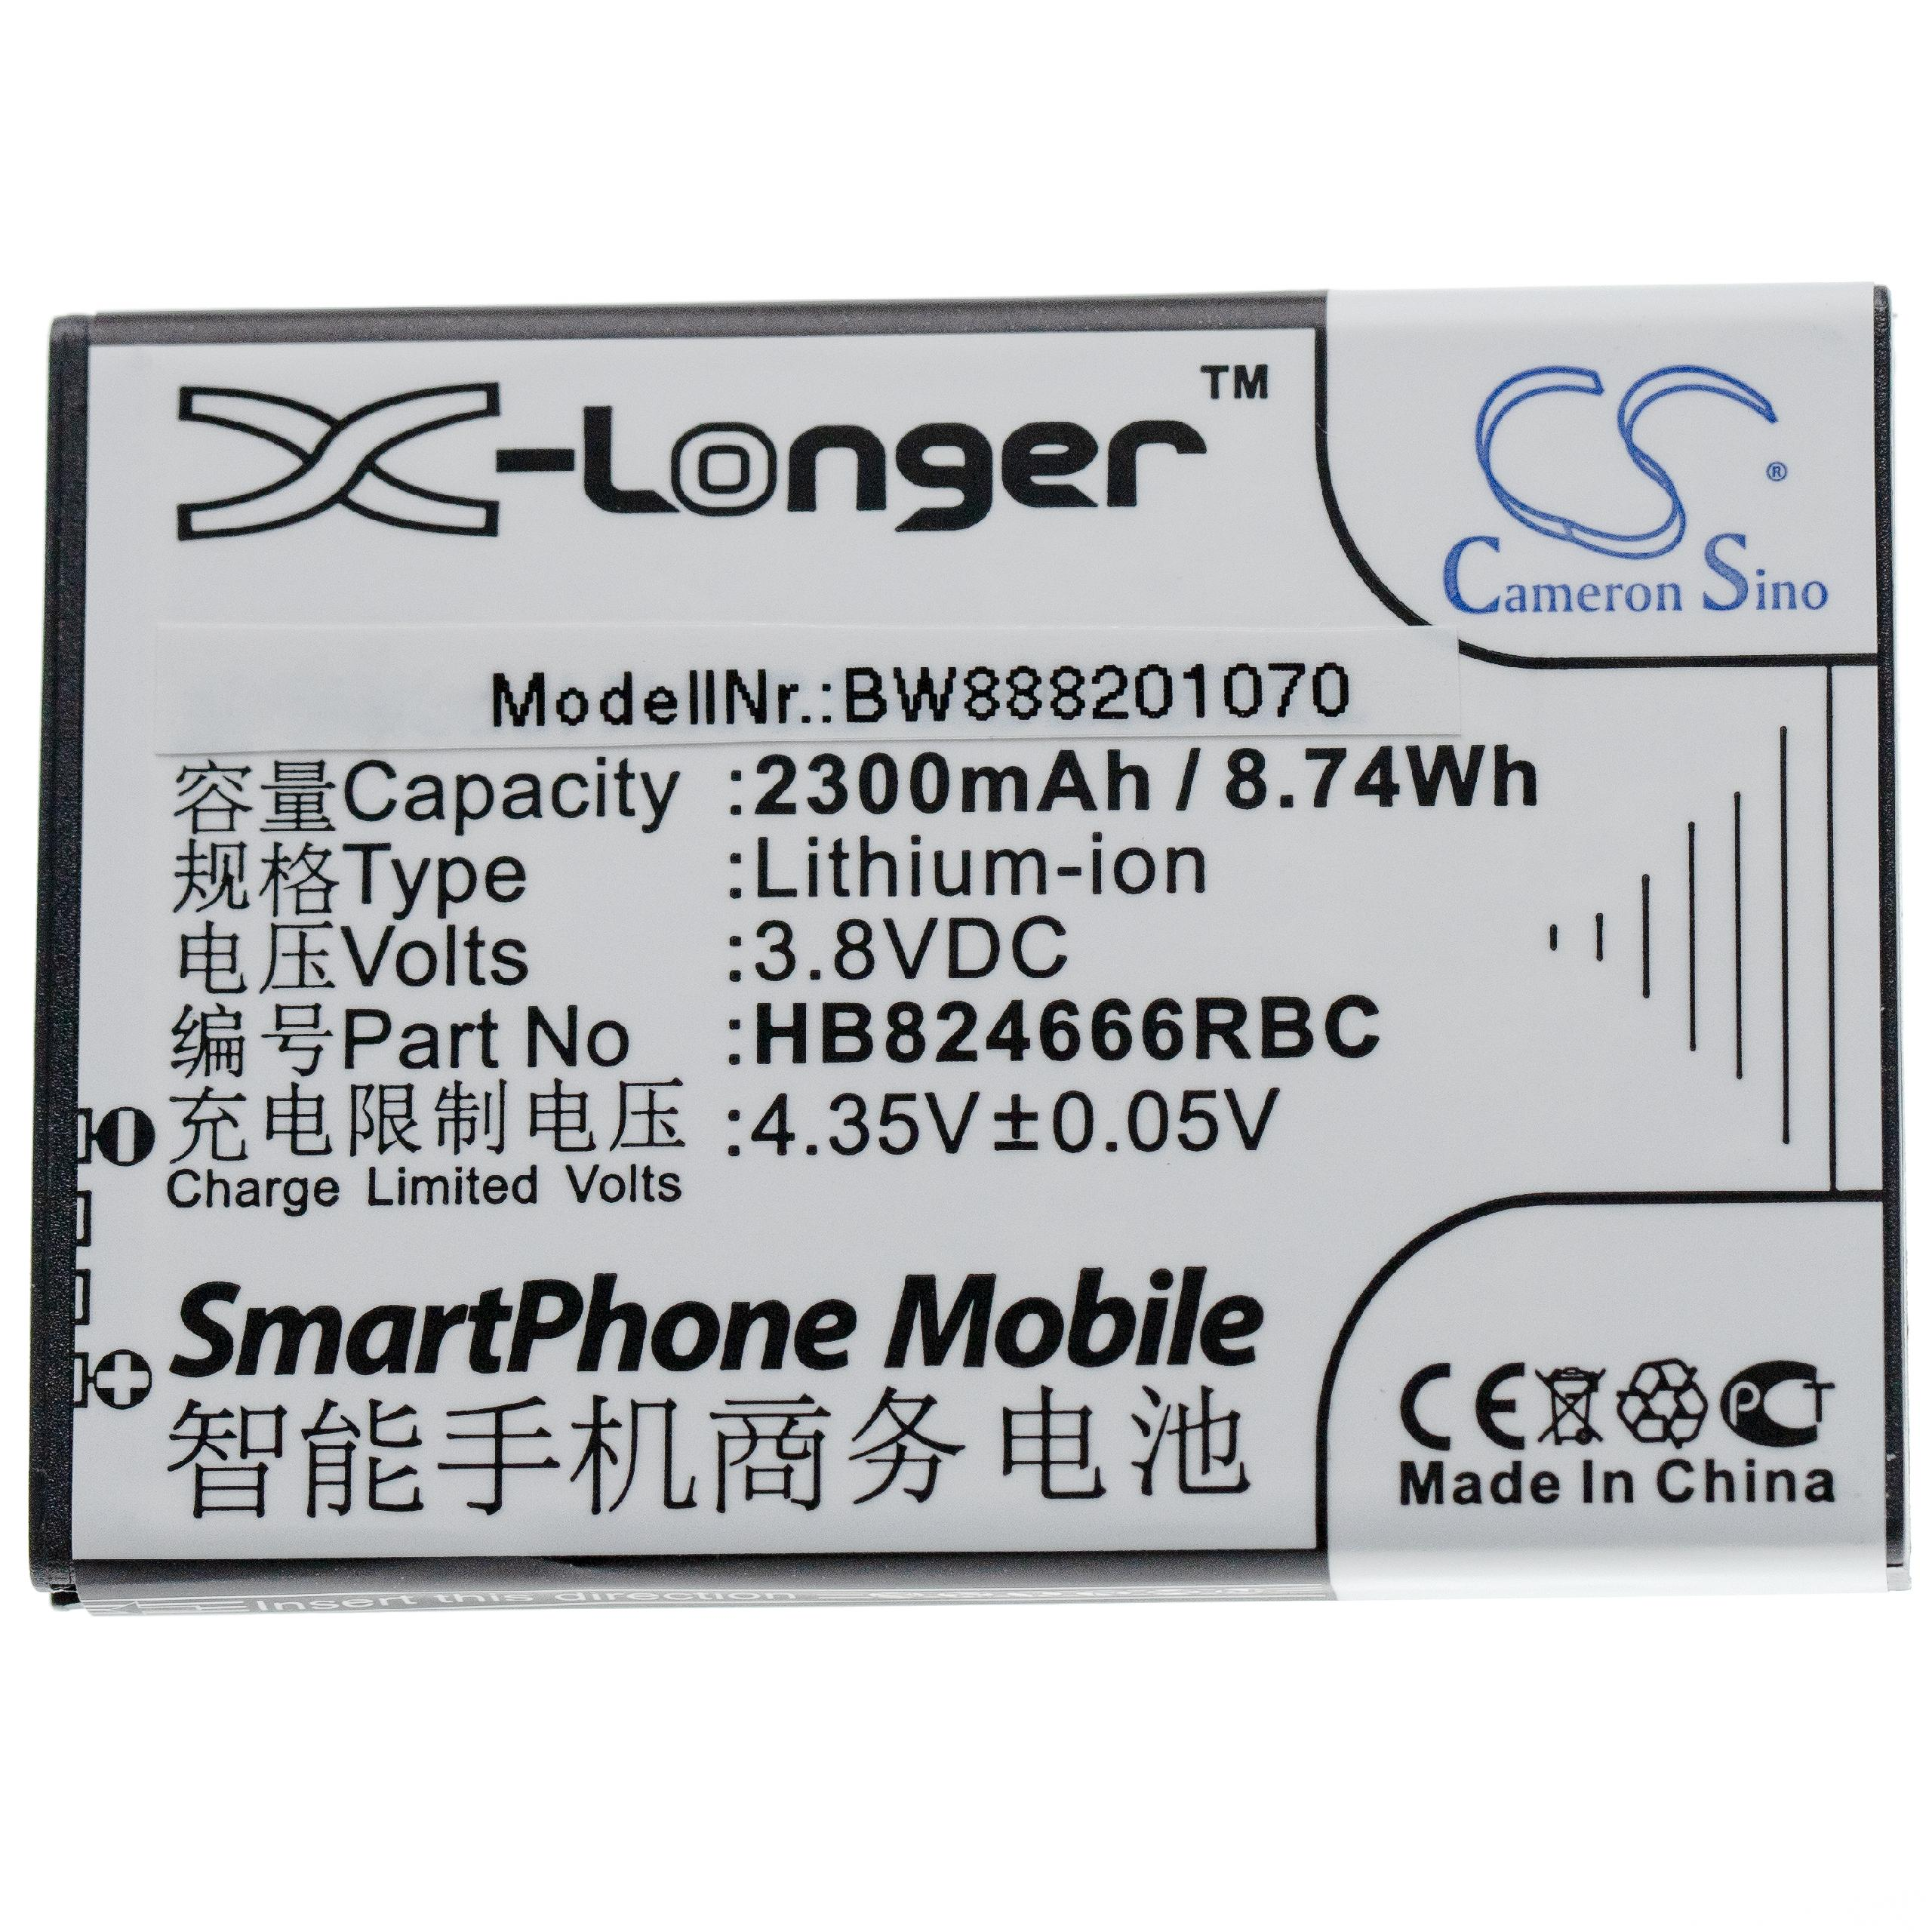 Router, HB824666RBC, 2300 3.8 Ersatz HWBBJ1 Li-Ion Akku für Huawei - für VHBW Volt,